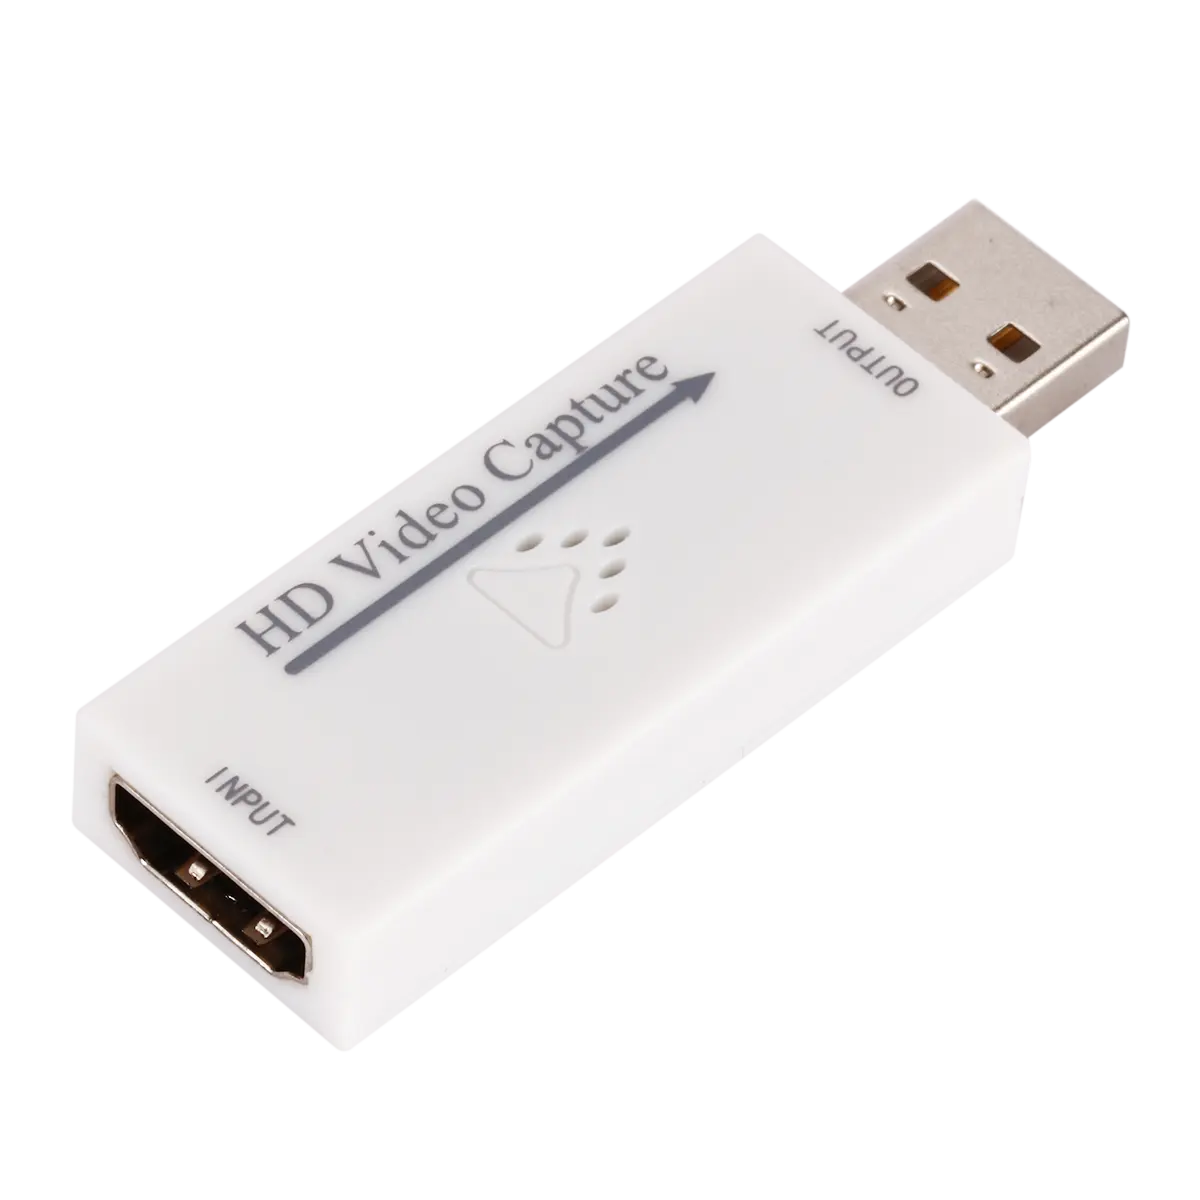 नई HD-MI वीडियो पर कब्जा कार्ड USB वीडियो पर कब्जा करने के लिए रिकॉर्ड बॉक्स